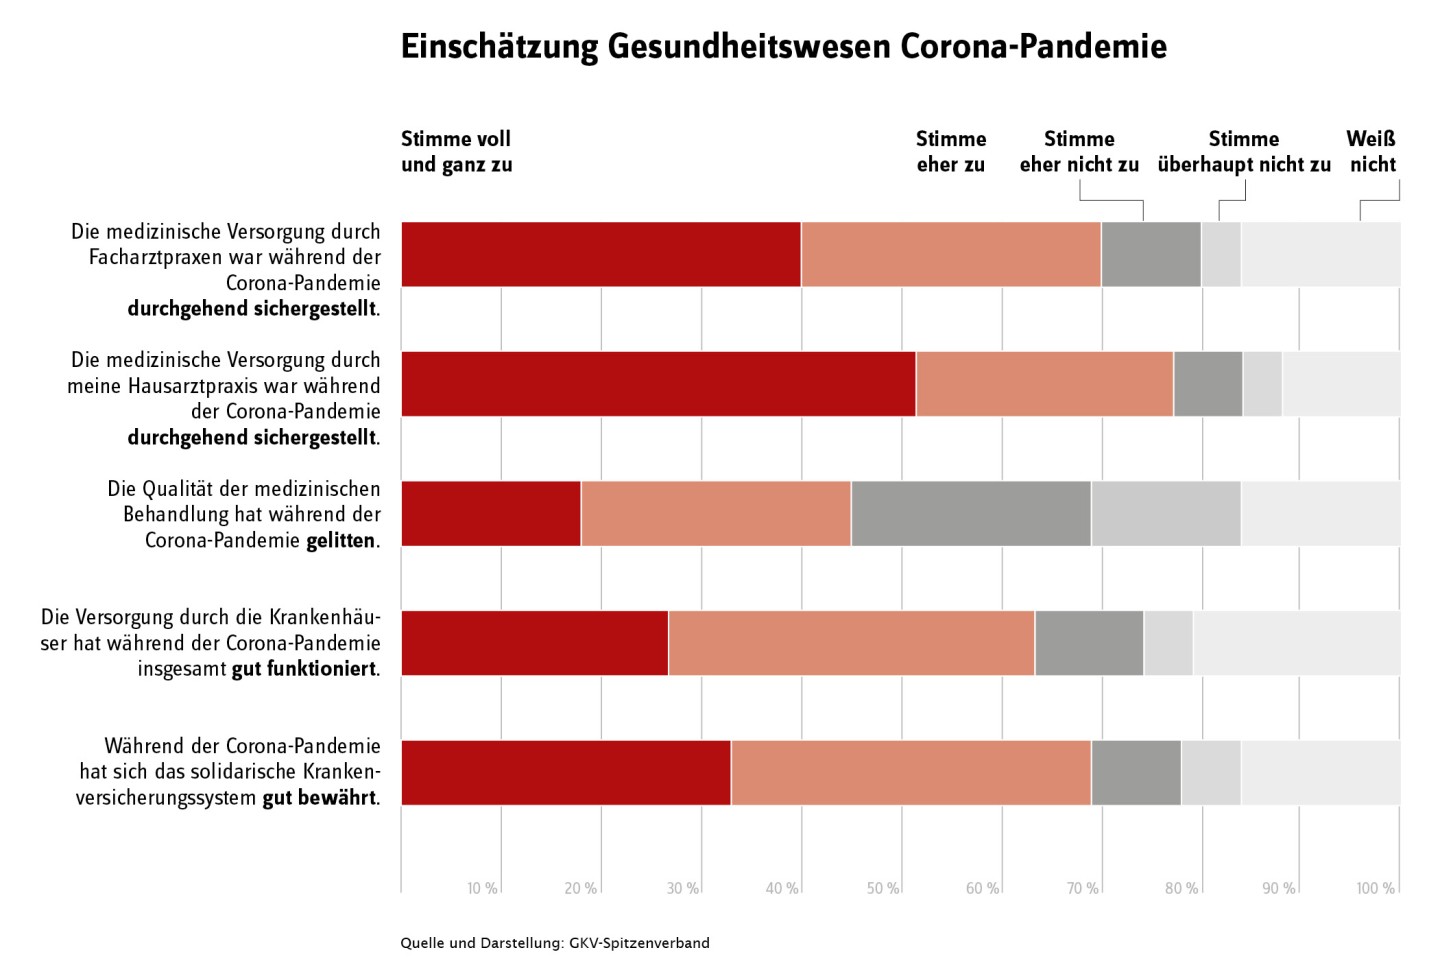 Eine Grafik zu den Einschätzungen des Gesundheitswesens in der Corona-Pandemie